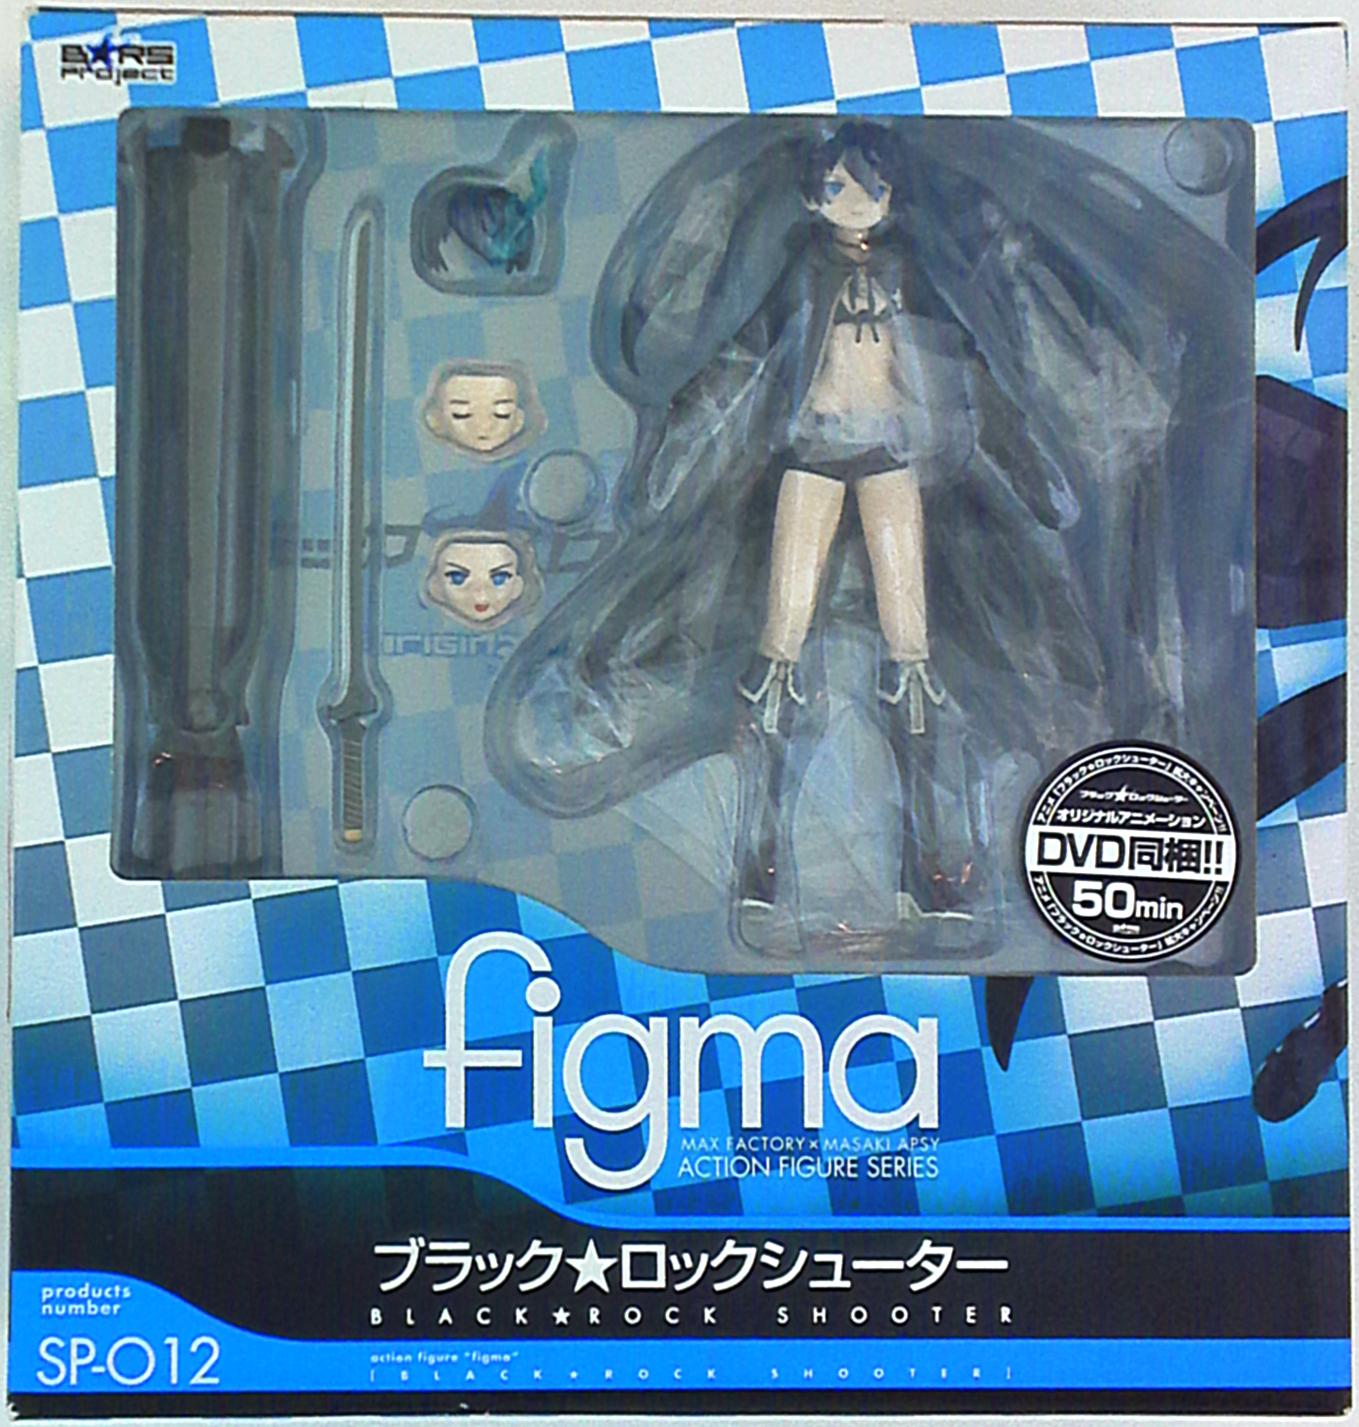 マックスファクトリー figma ブラック☆ロックシューター SP-012 ...